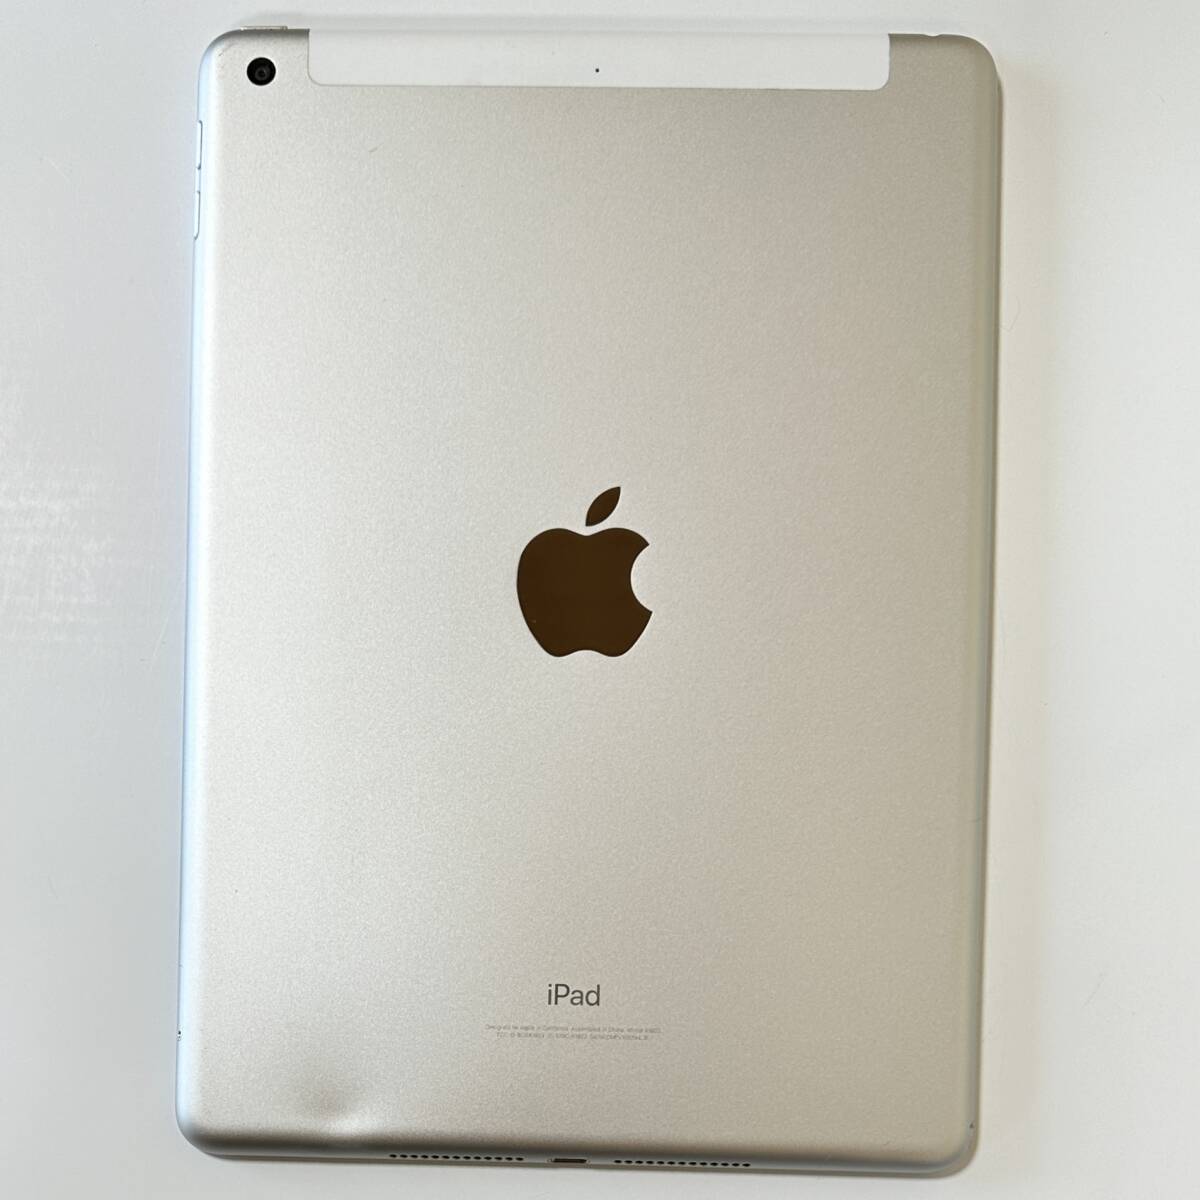 Apple SIM свободный iPad ( no. 5 поколение ) серебряный 32GB MP1L2J/A Wi-Fi+Cellular Acty беж .n разблокирован 